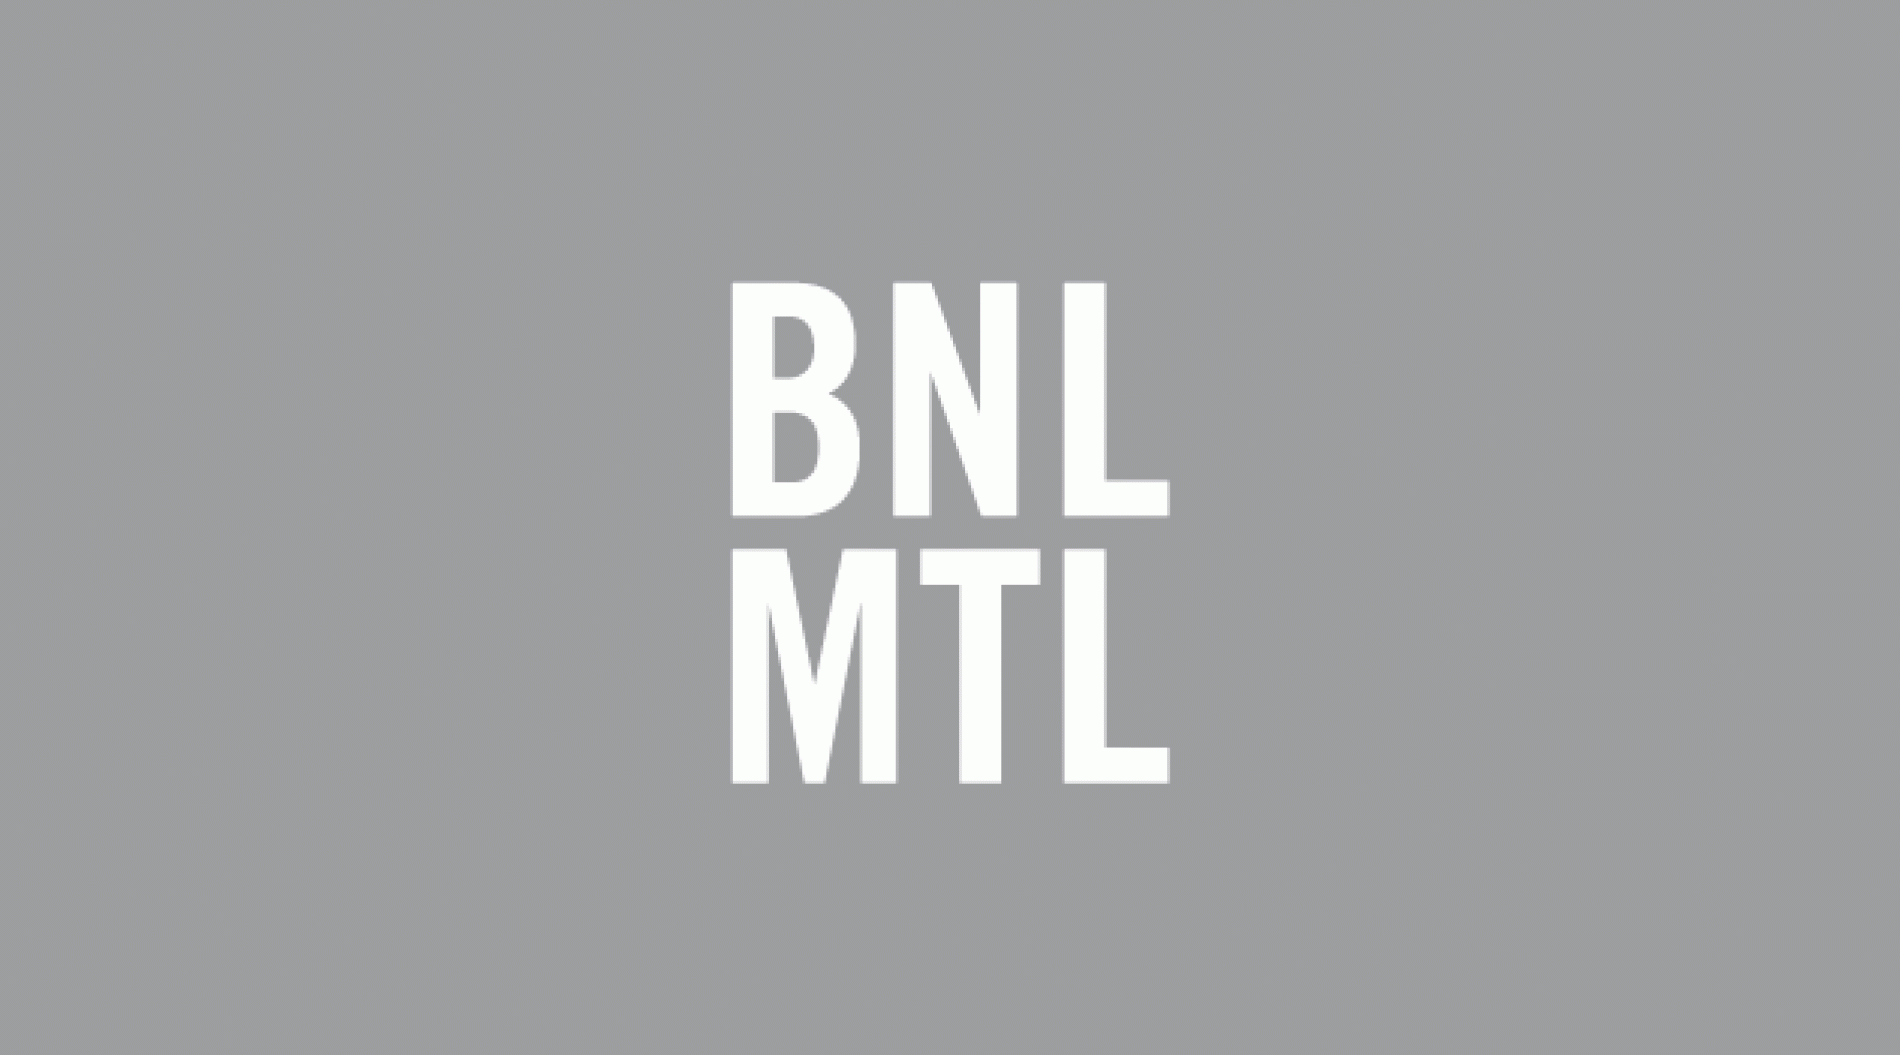 The Biennale de Montréal (BNL MTL)